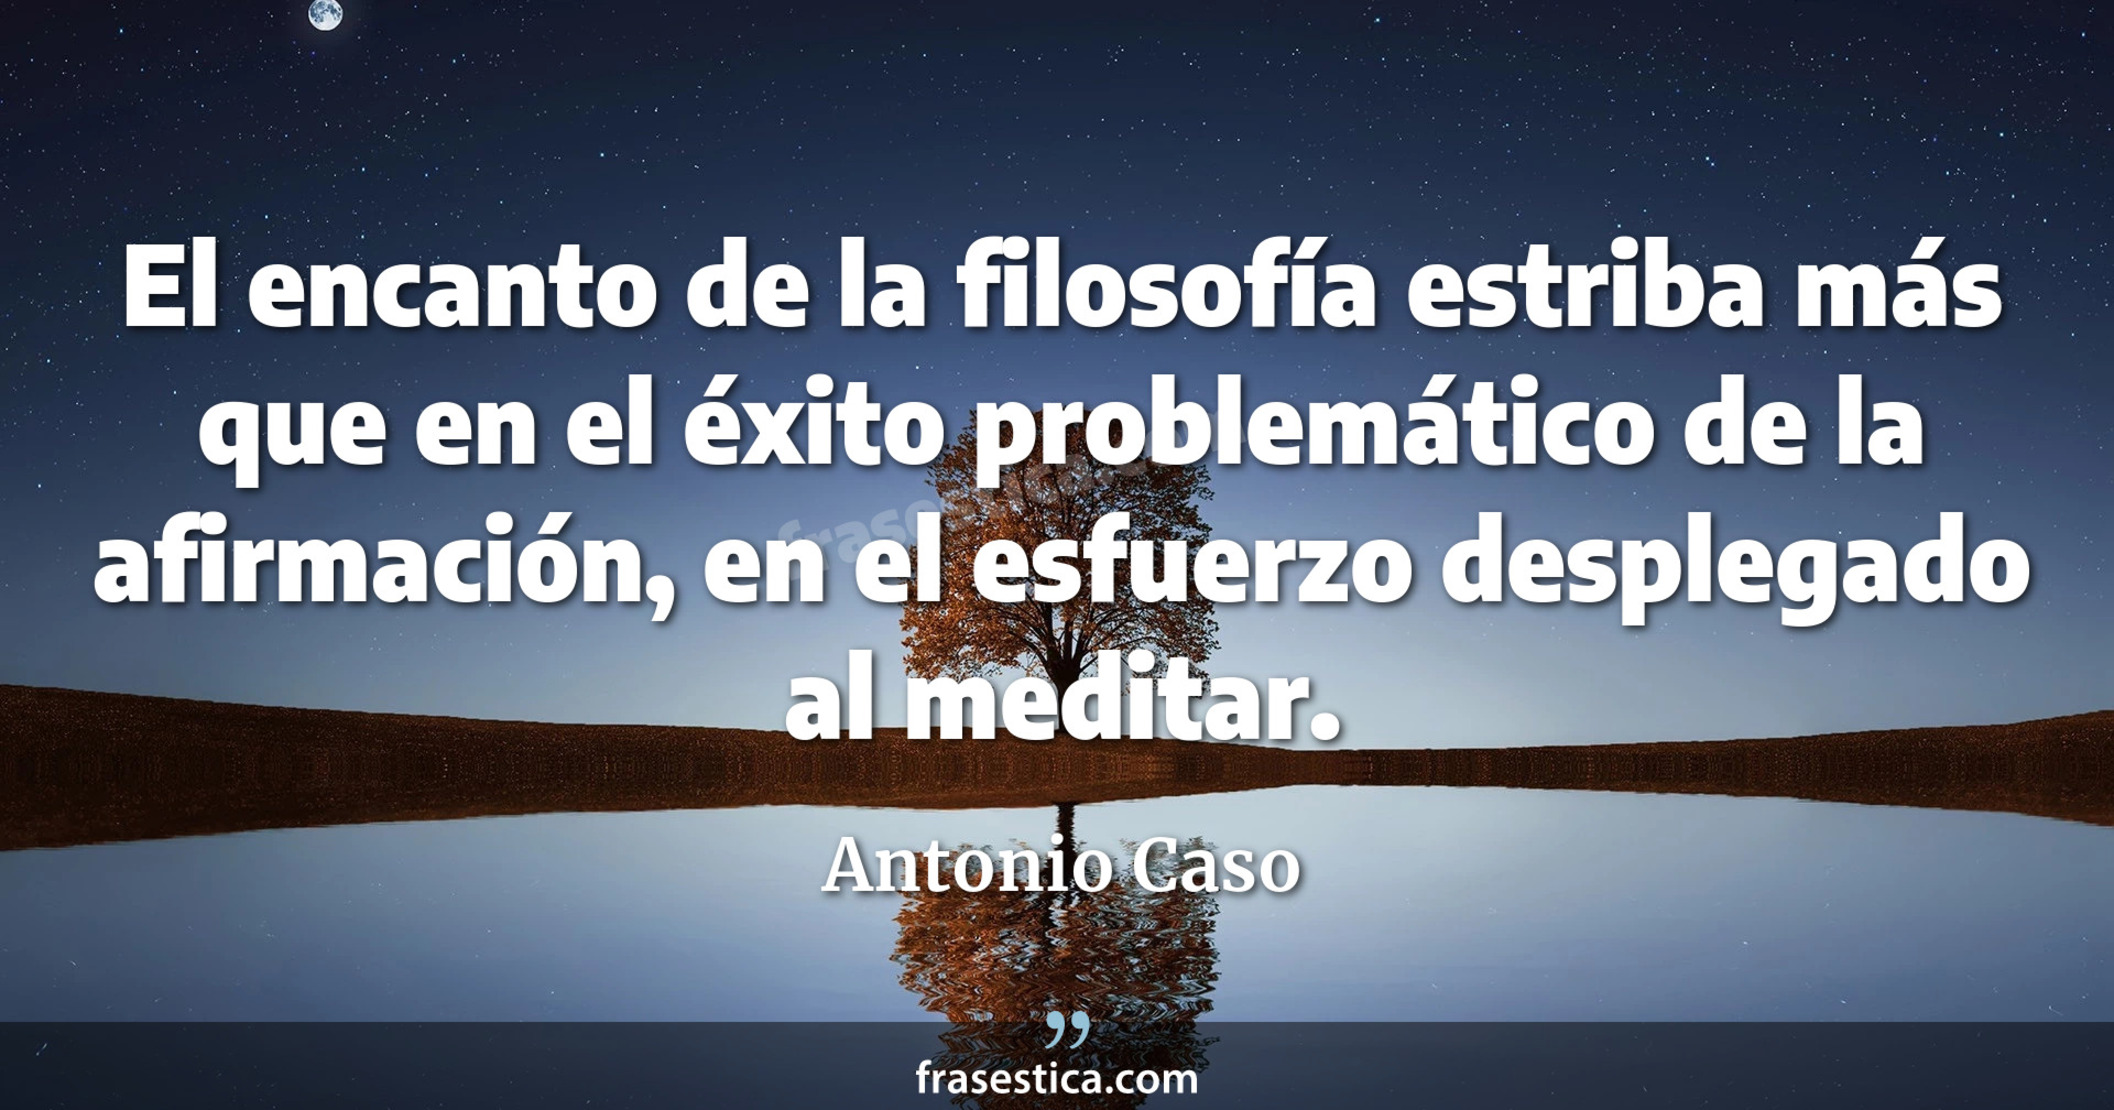 El encanto de la filosofía estriba más que en el éxito problemático de la afirmación, en el esfuerzo desplegado al meditar. - Antonio Caso